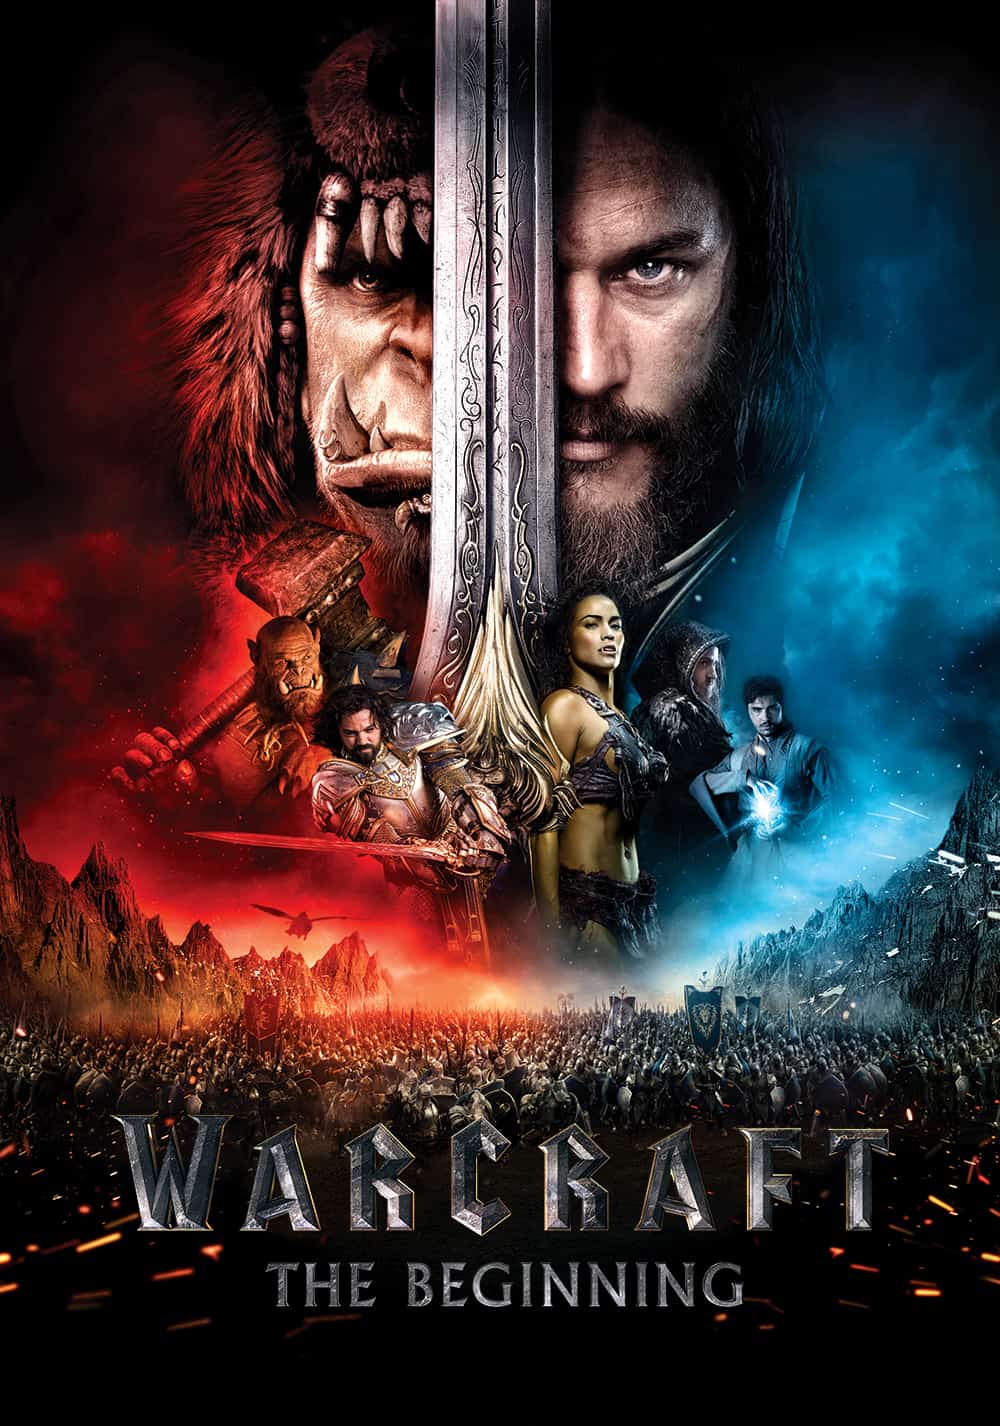 warcraft 2 movie release date 2018